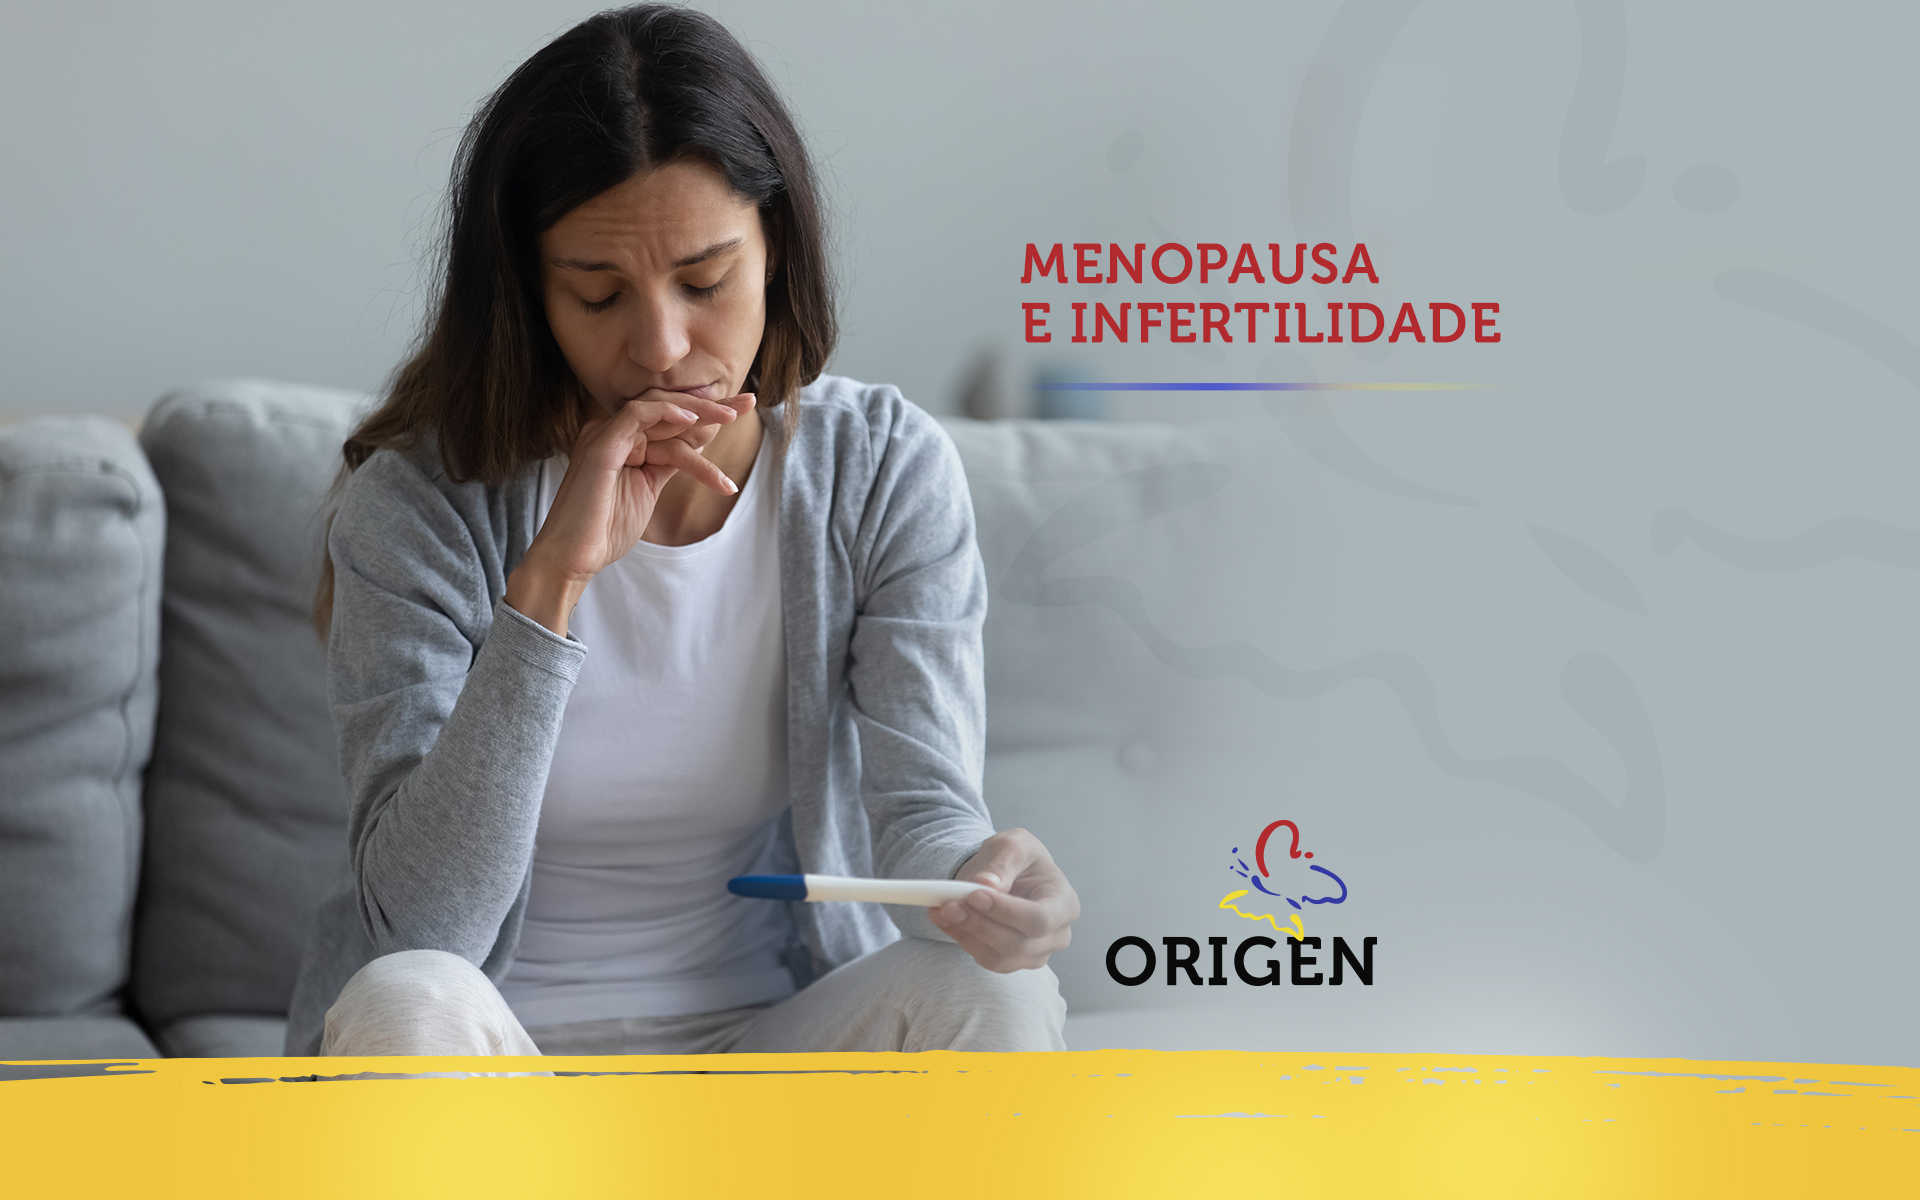 Menopausa e infertilidade